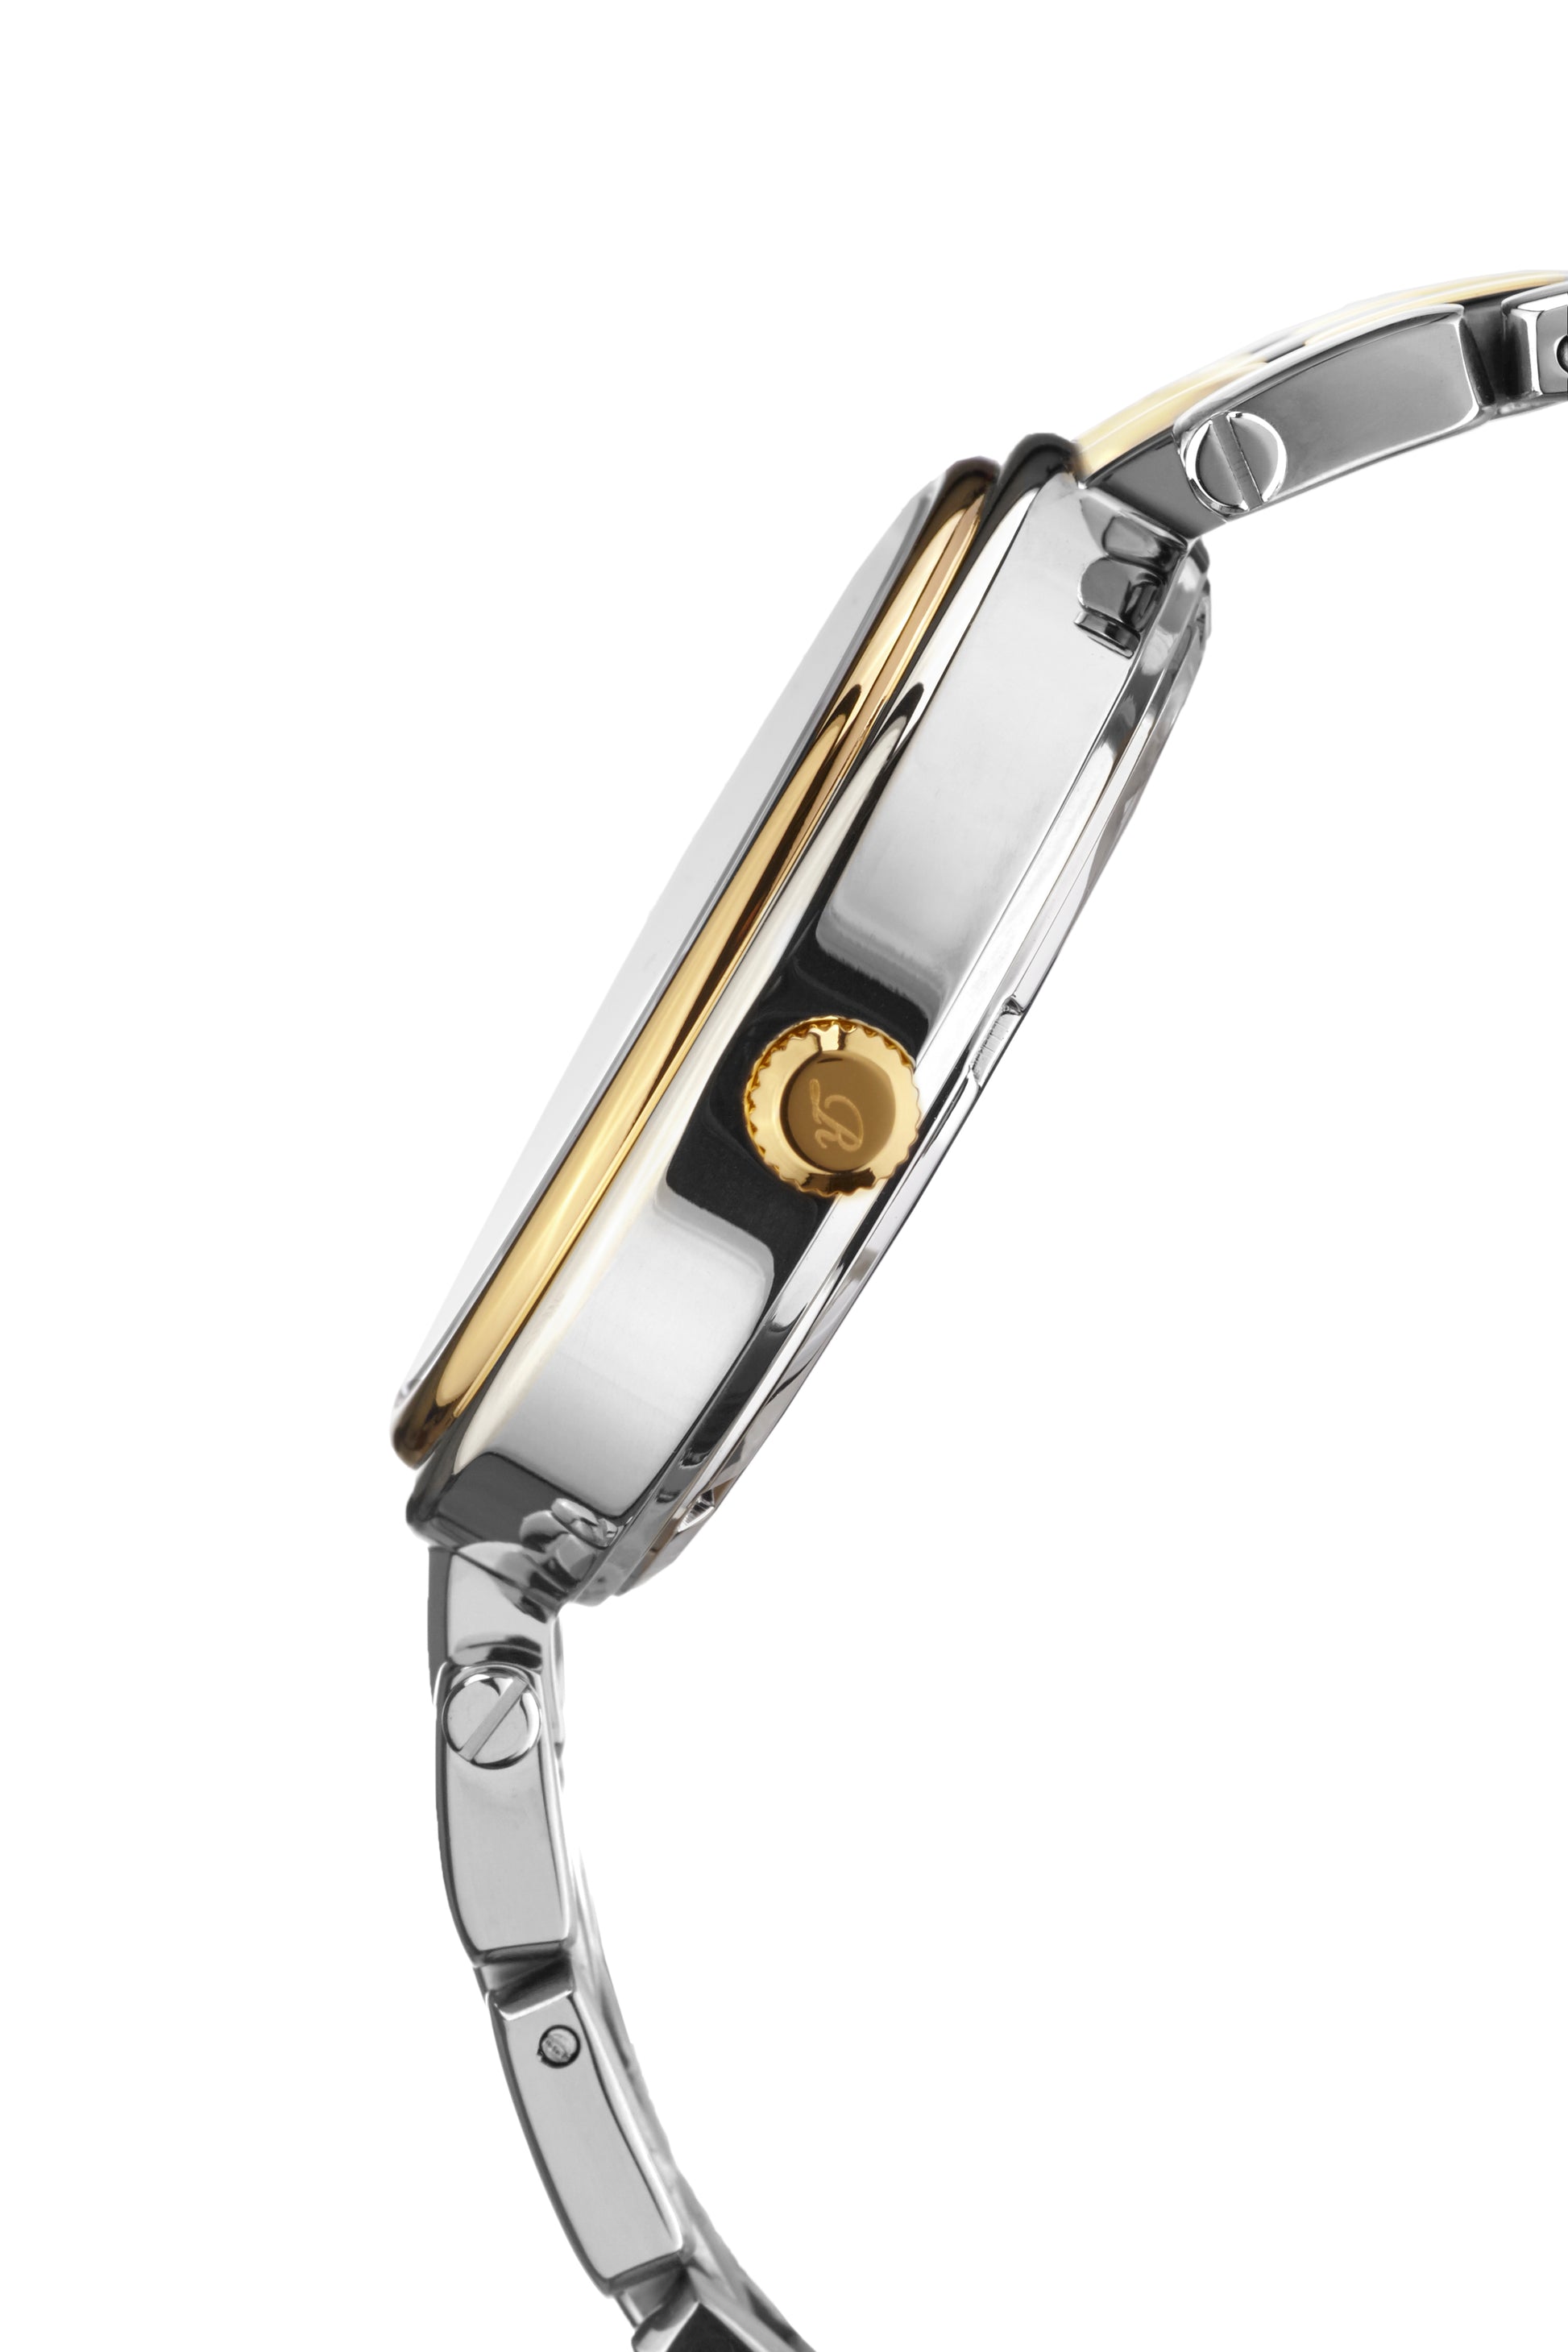 Automatic watches — Innessa — Richtenburg — two-tone gold IP